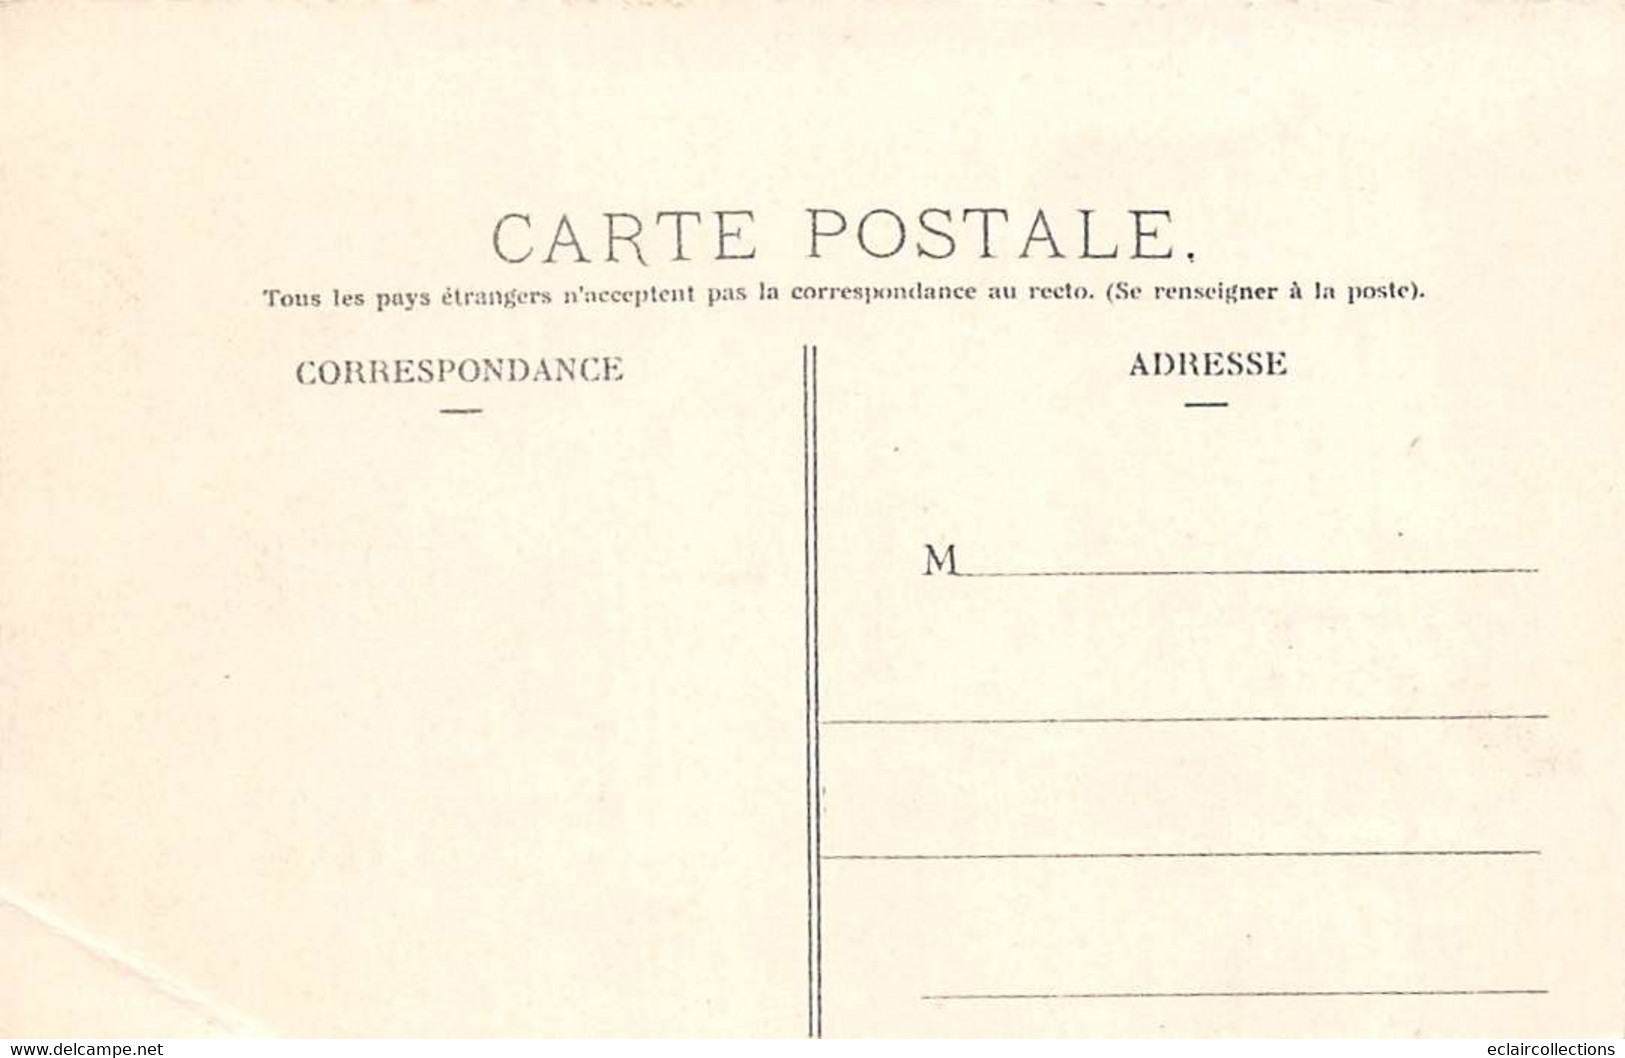 Lastic      63       Circuit D'Auvergne Coupe Gordon Bennett  1905.  Virage De La Mort    N°20     (voir Scan) - Other & Unclassified